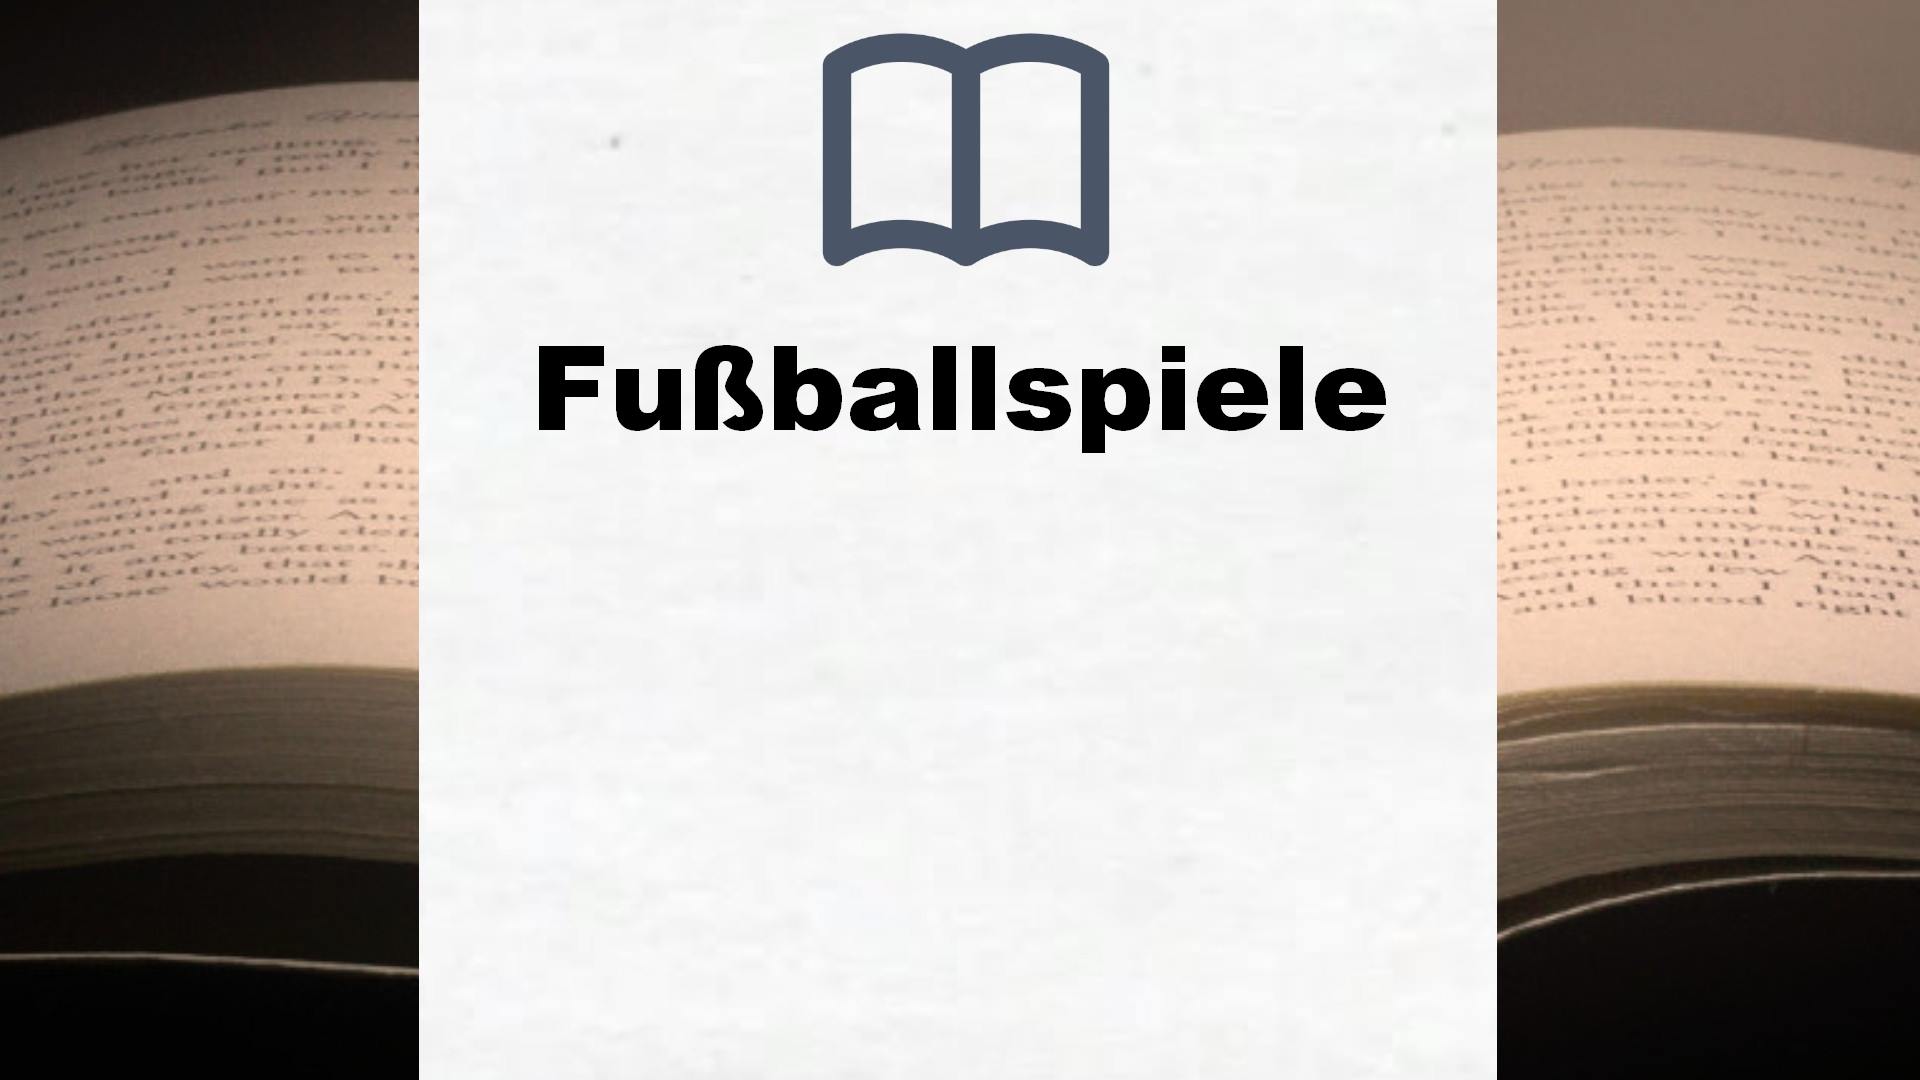 Bücher über Fußballspiele